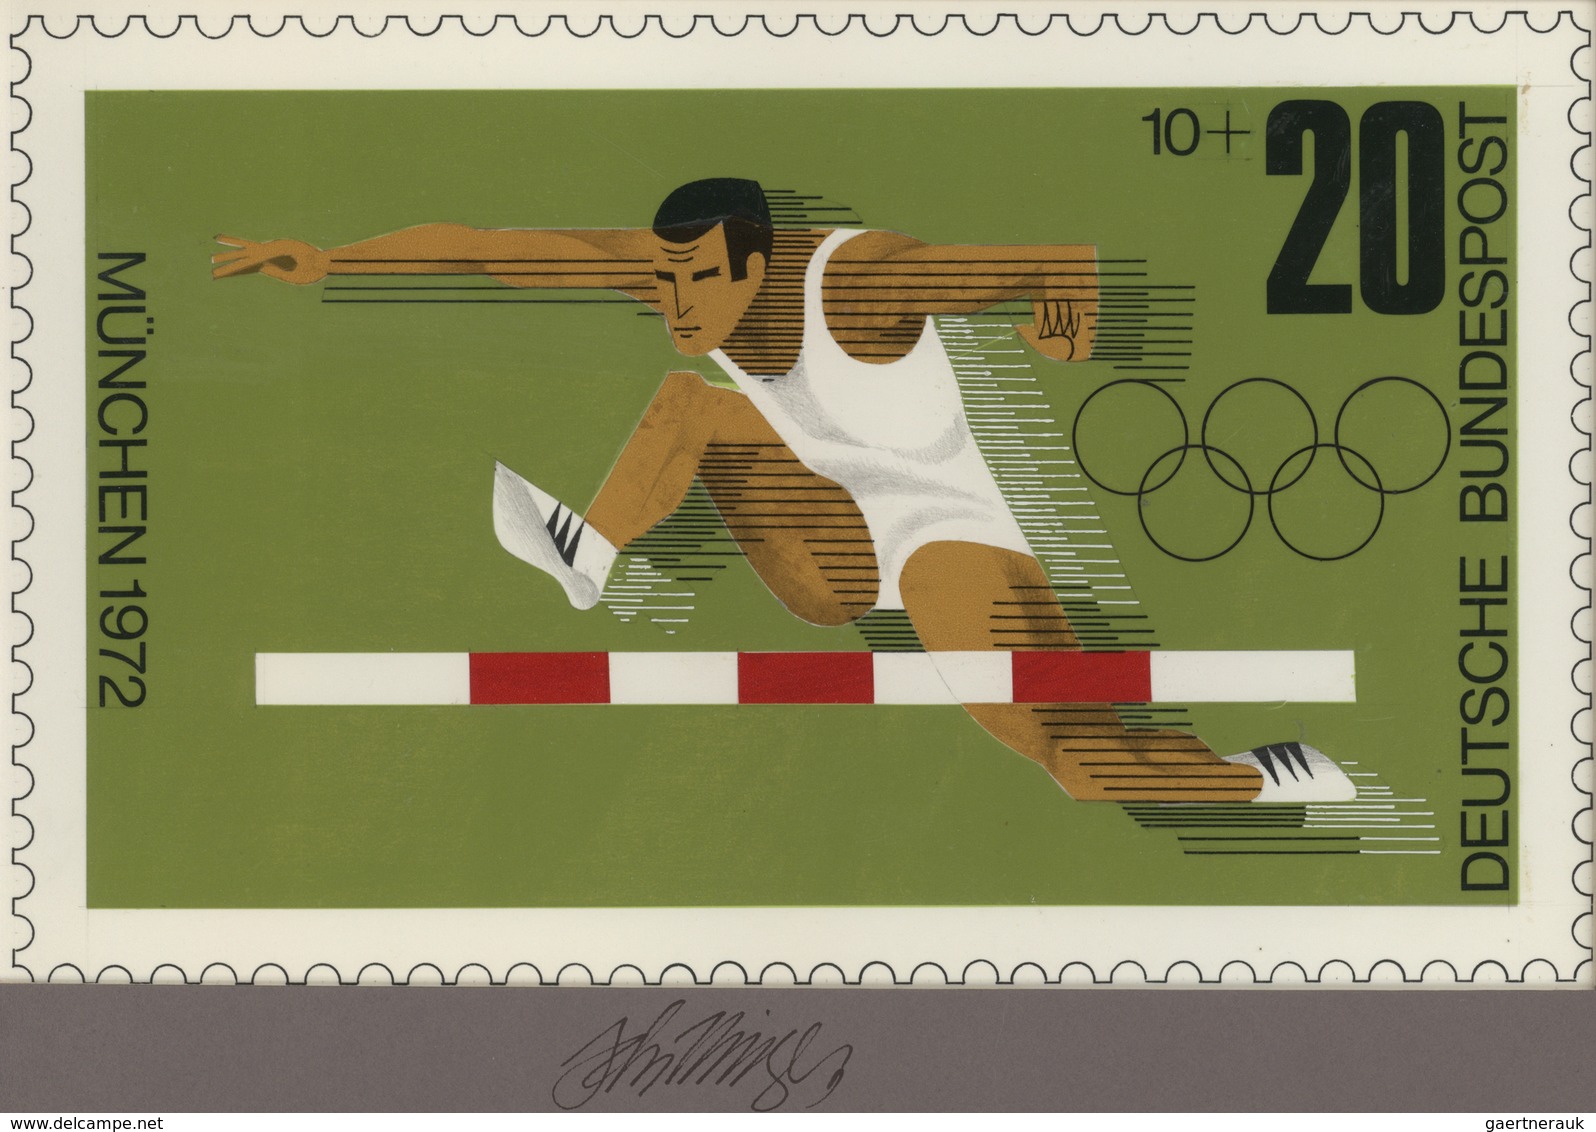 Thematik: Sport-Leichtathletik / Sports-athletics: 1972, Bund, Nicht Angenommener Künstlerentwurf (2 - Athletics